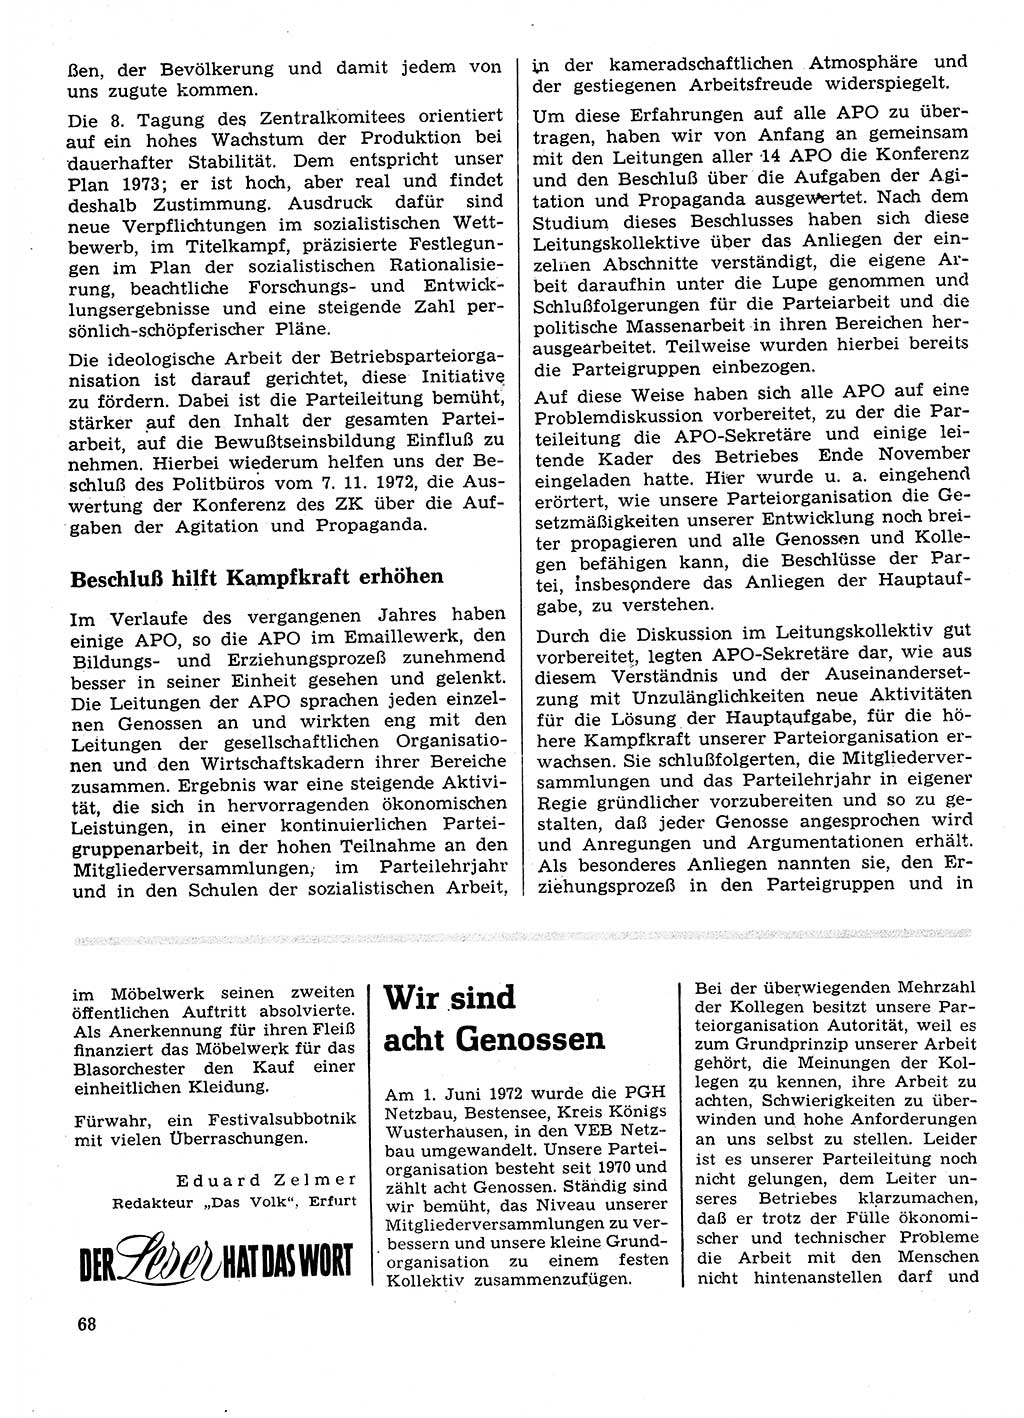 Neuer Weg (NW), Organ des Zentralkomitees (ZK) der SED (Sozialistische Einheitspartei Deutschlands) für Fragen des Parteilebens, 28. Jahrgang [Deutsche Demokratische Republik (DDR)] 1973, Seite 68 (NW ZK SED DDR 1973, S. 68)